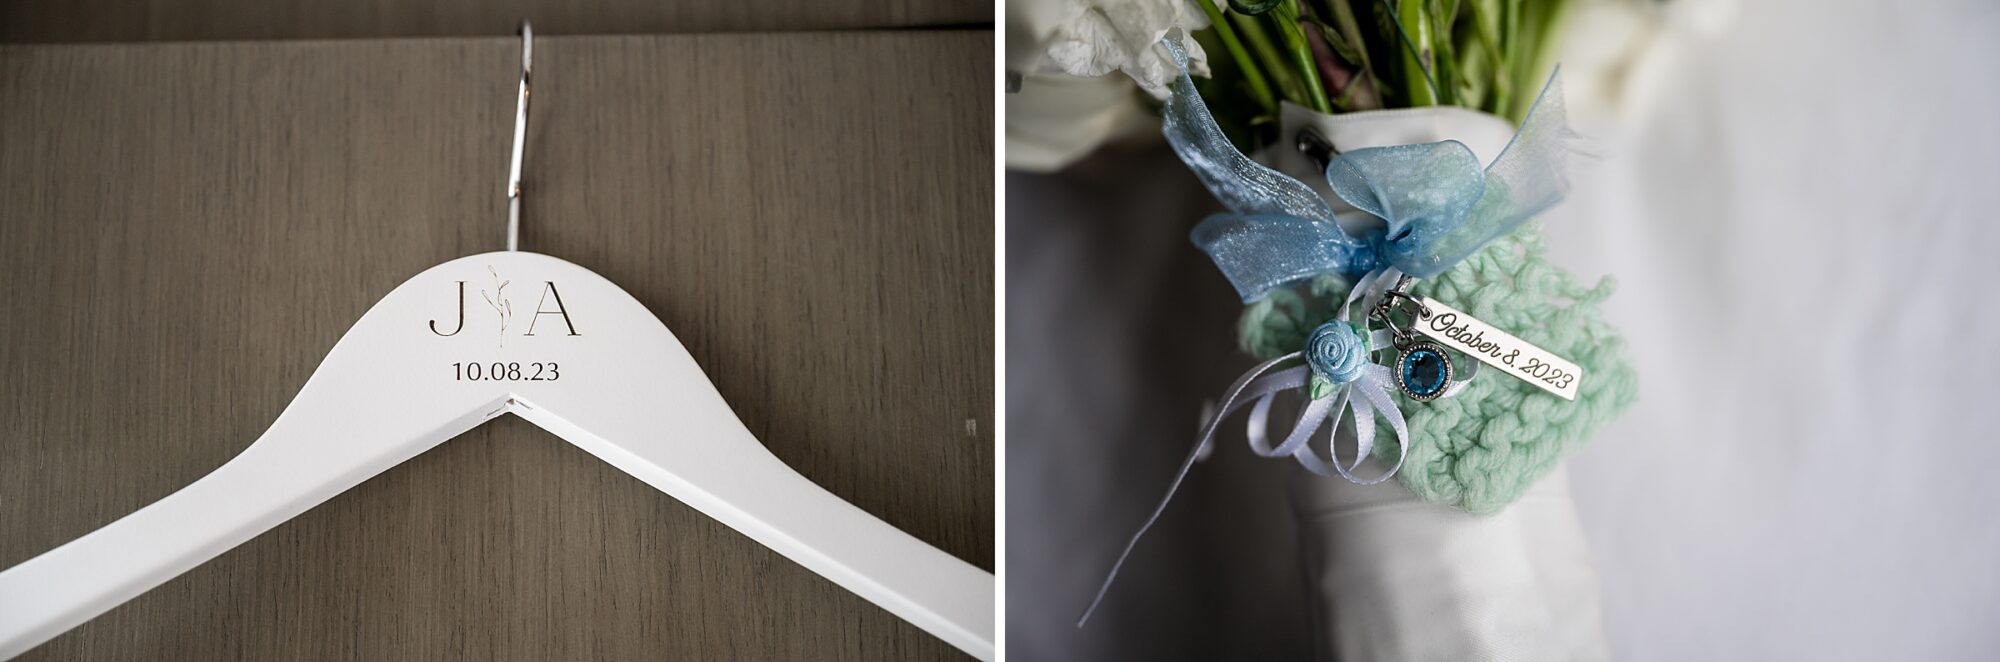 A wedding dress hangs on a hanger next to a bouquet.